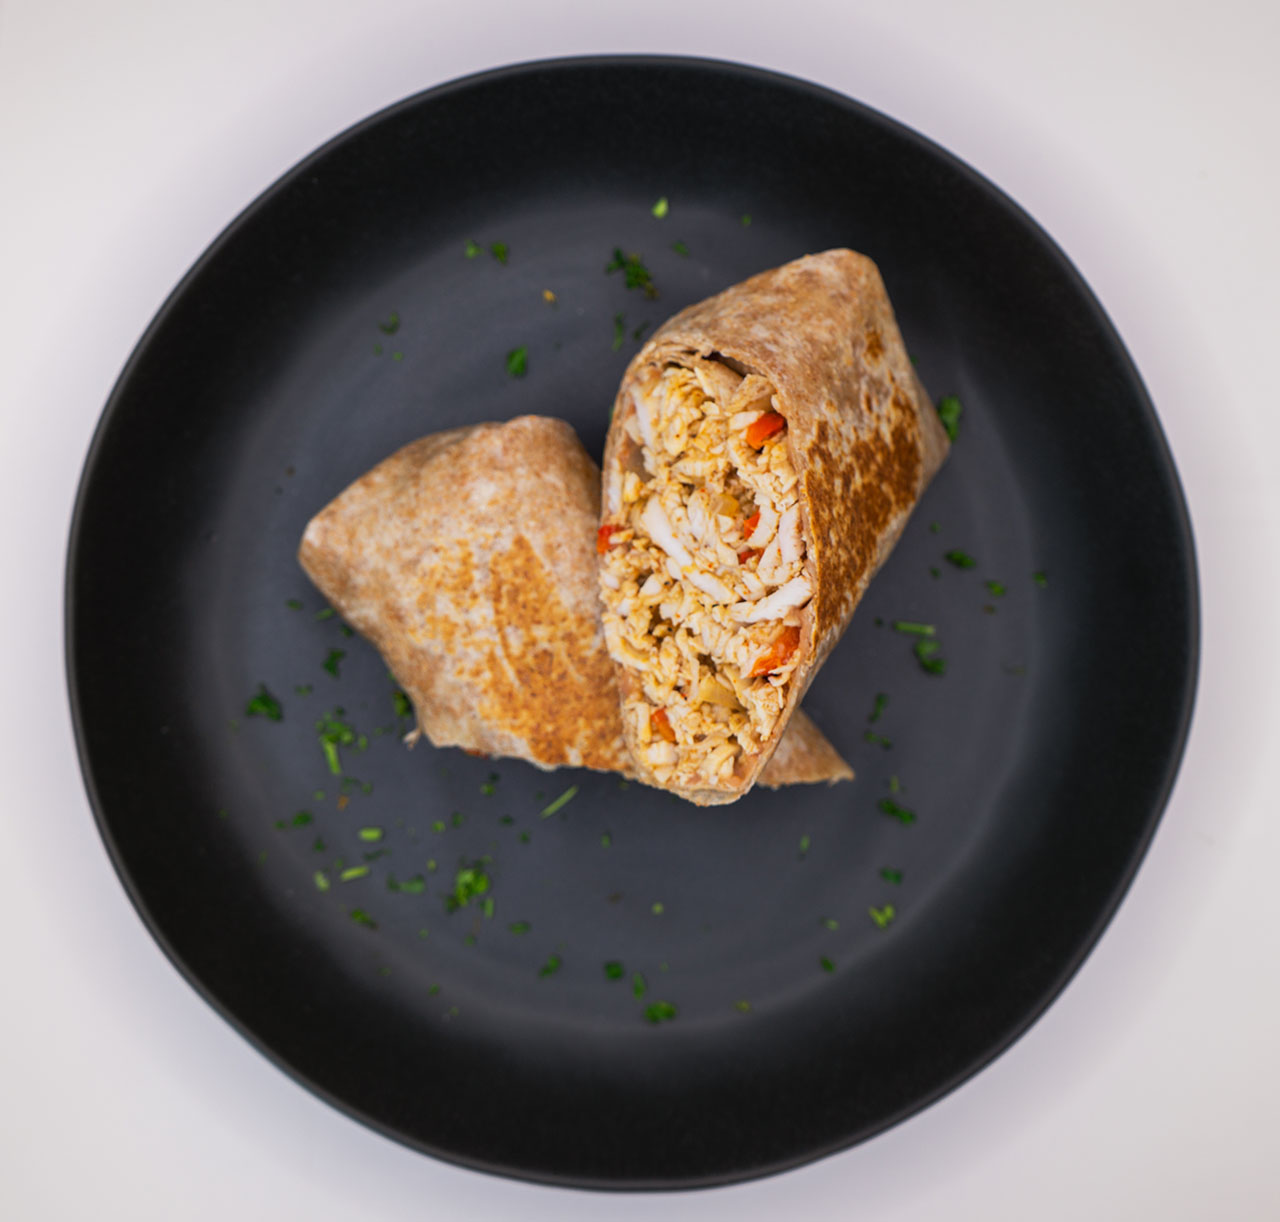 Chicken fajita burrito plated